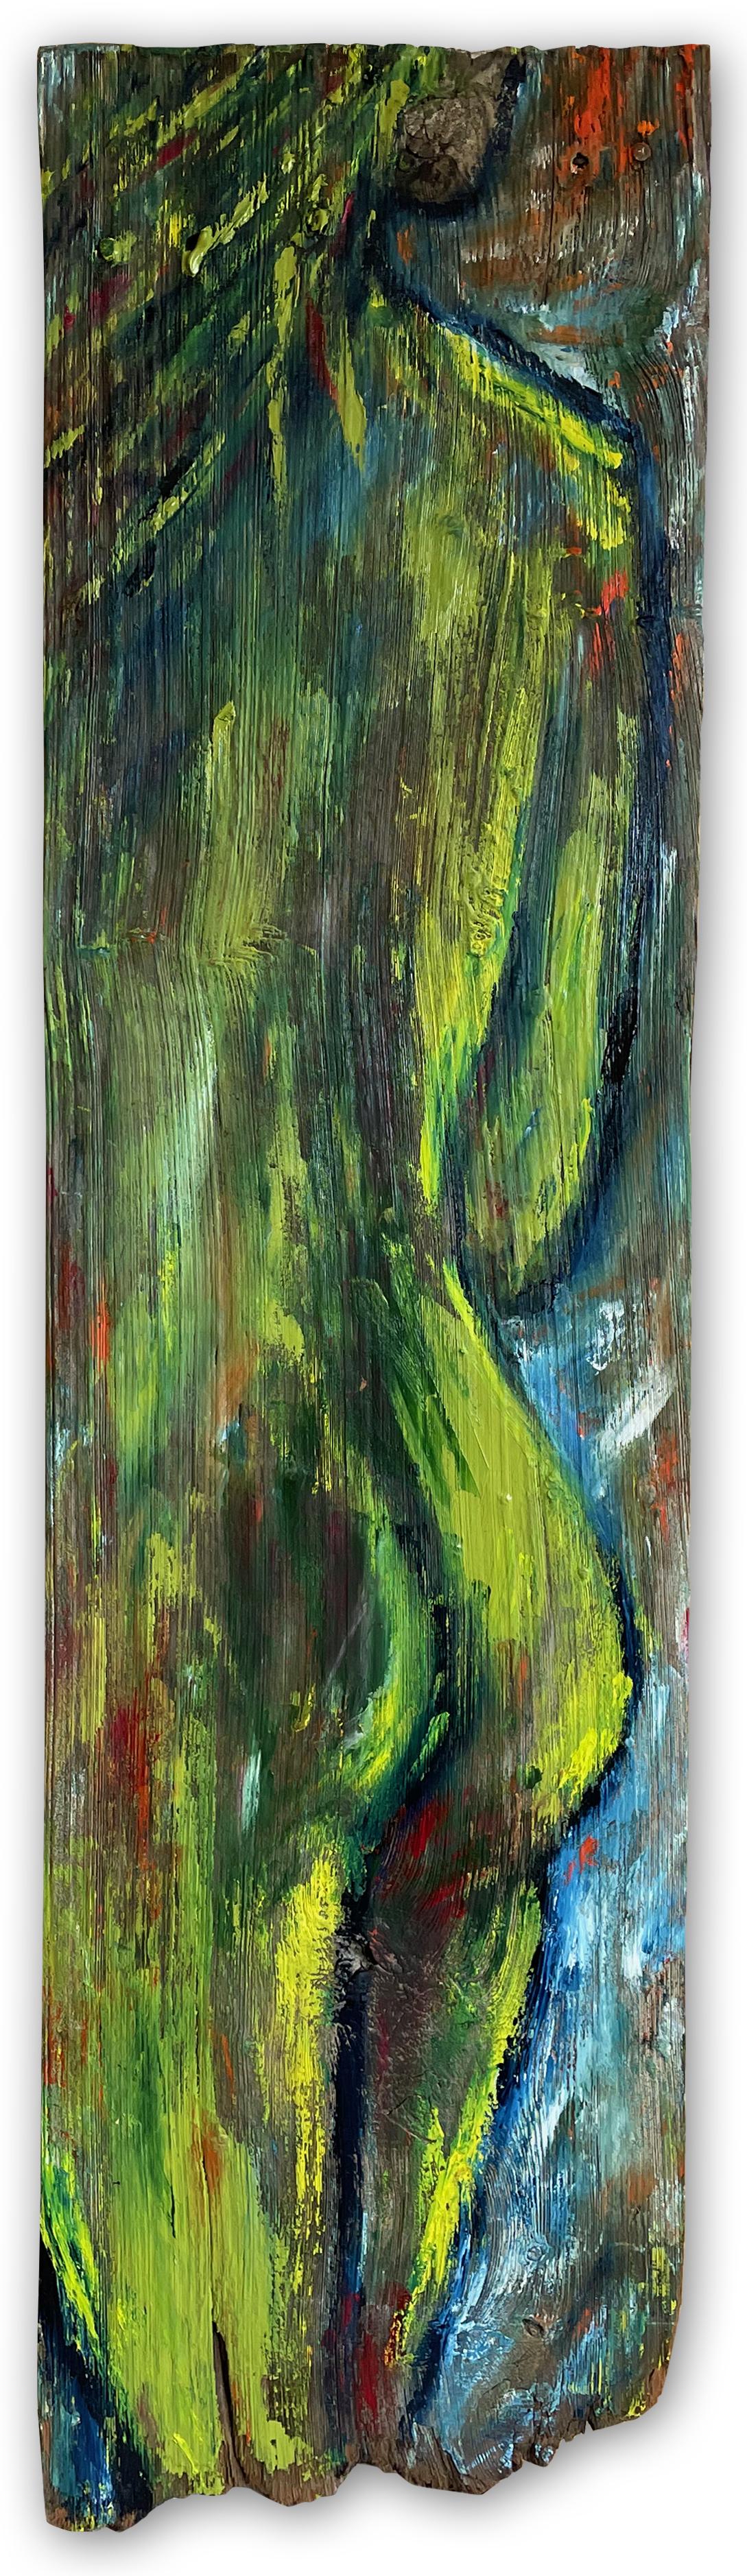 "Envious" von Kristy Chettle ist ein auffälliger zeitgenössischer figurativer Akt, der die rohen Strukturen von wiederverwendetem Holz mit der Fließfähigkeit von Ölfarbe verbindet. Die langgestreckte 46" x 12" große Komposition zeigt Chettles